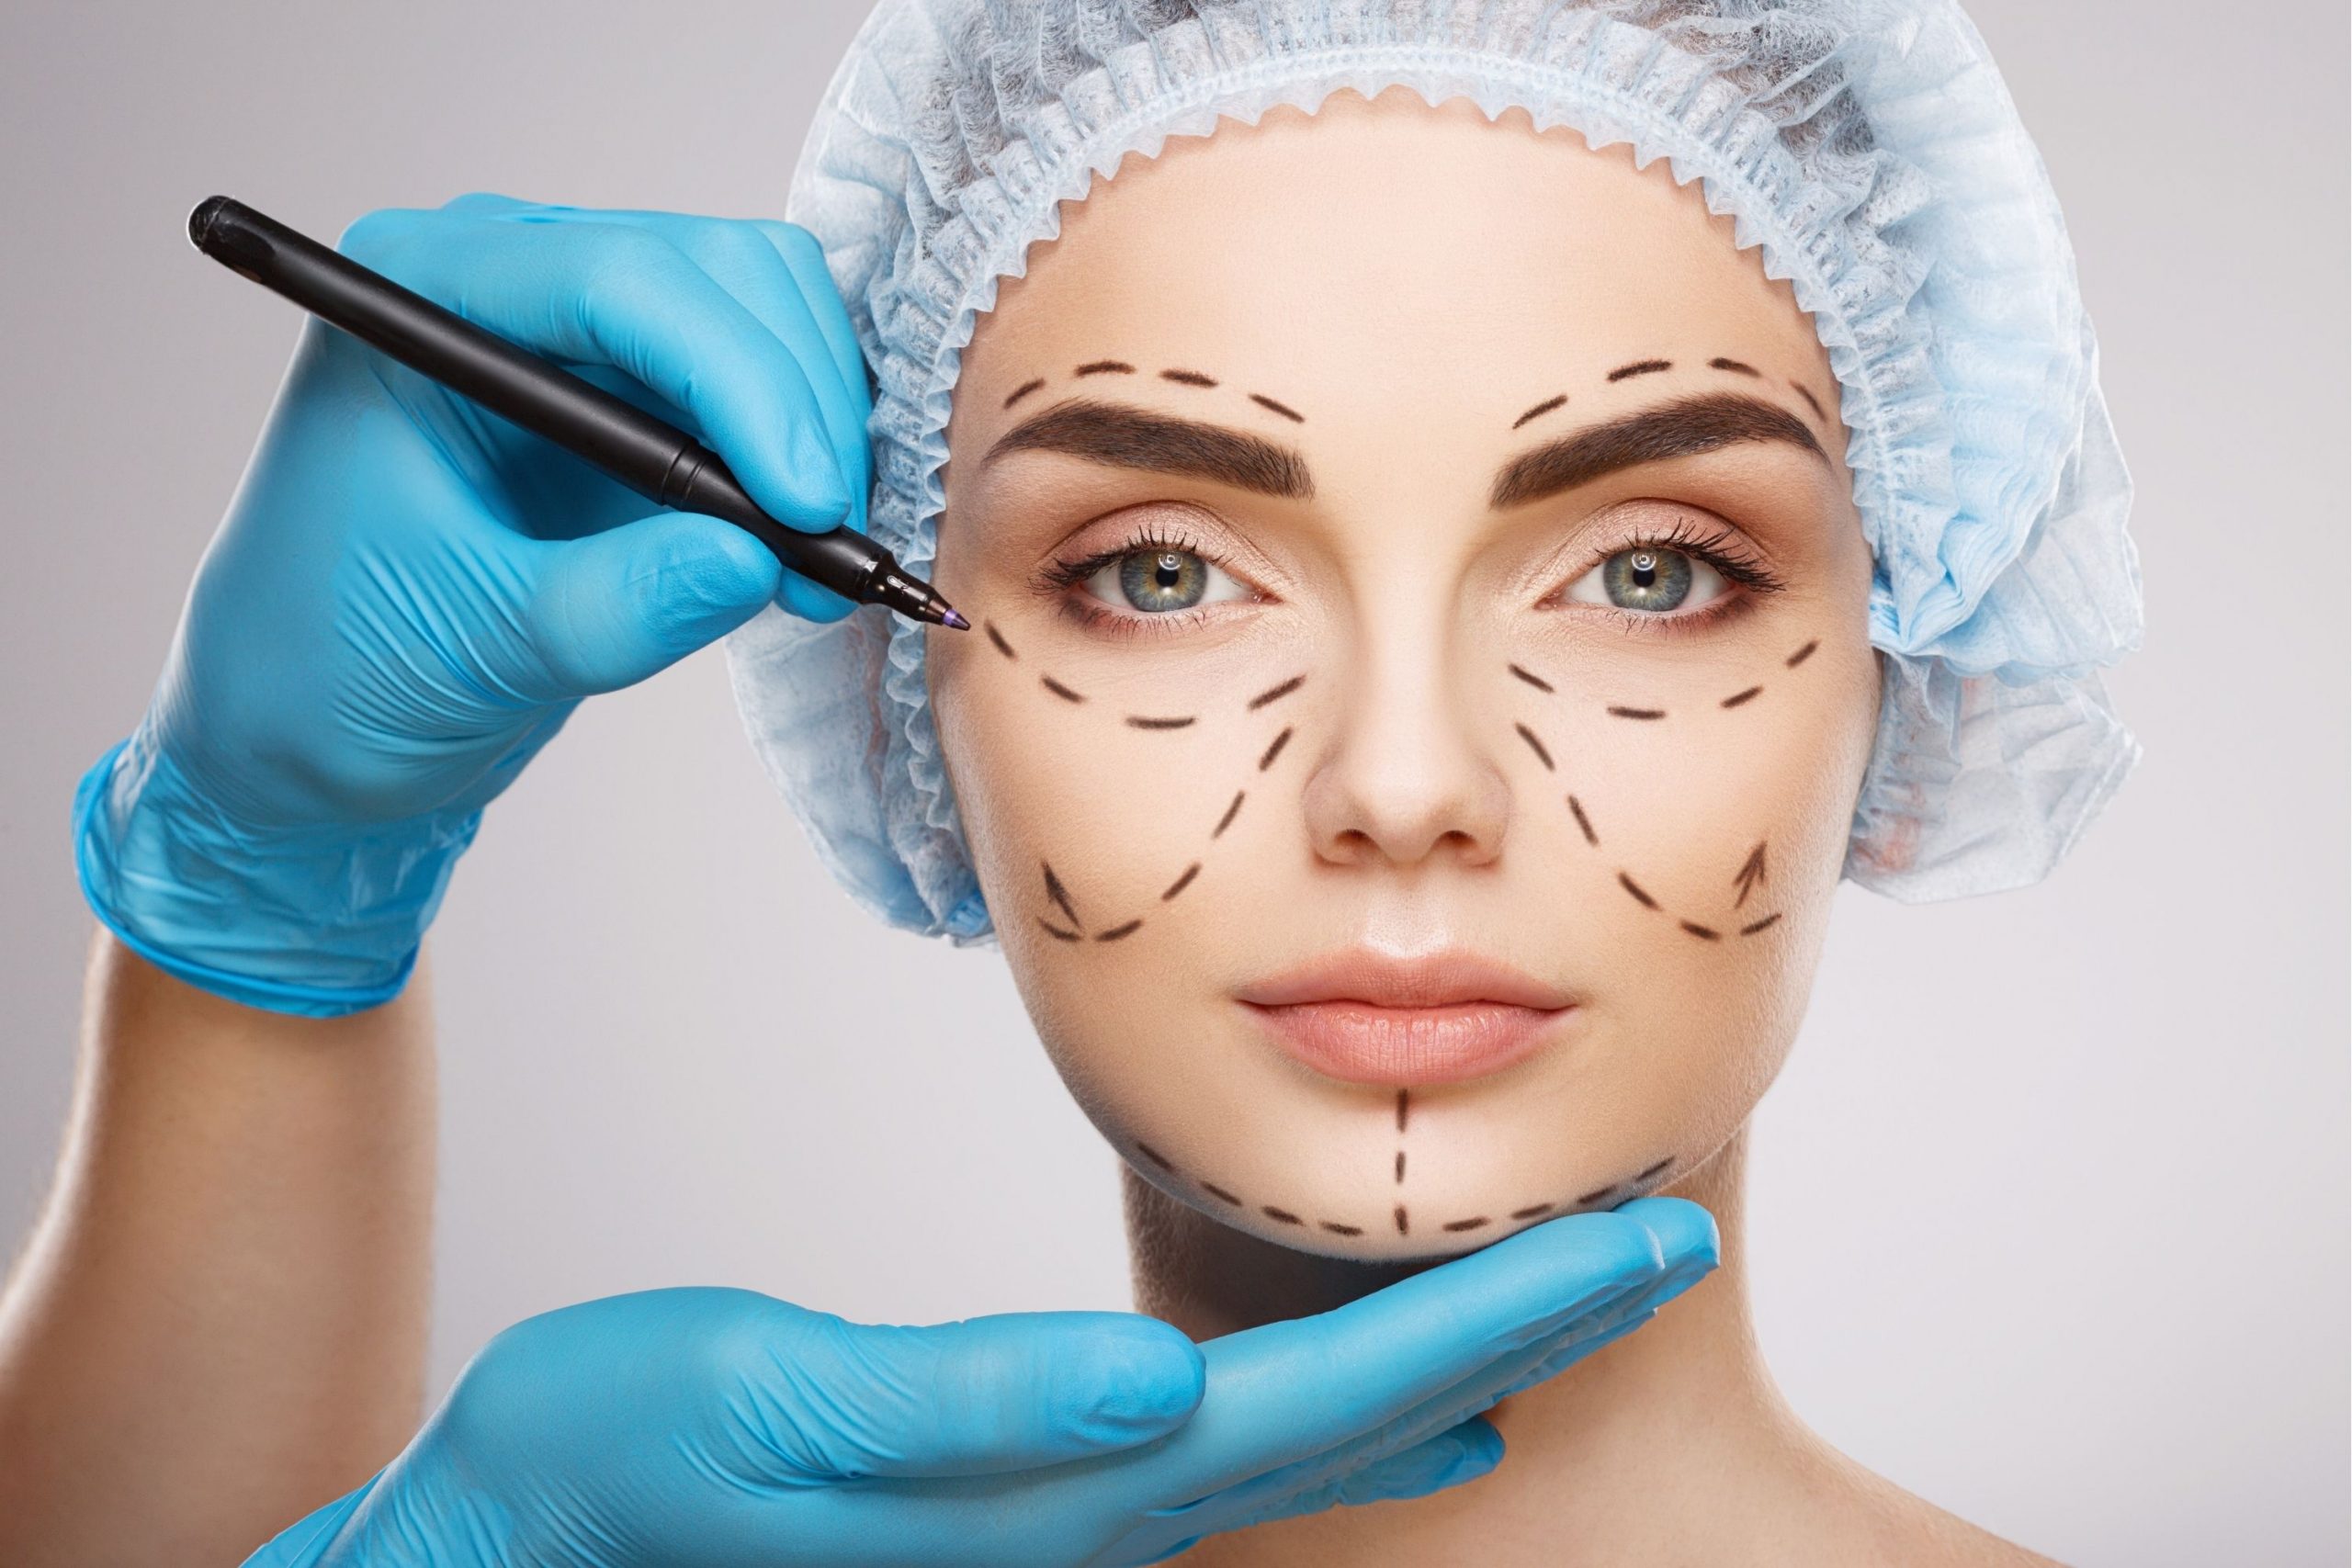 The Top Cosmetic Procedures